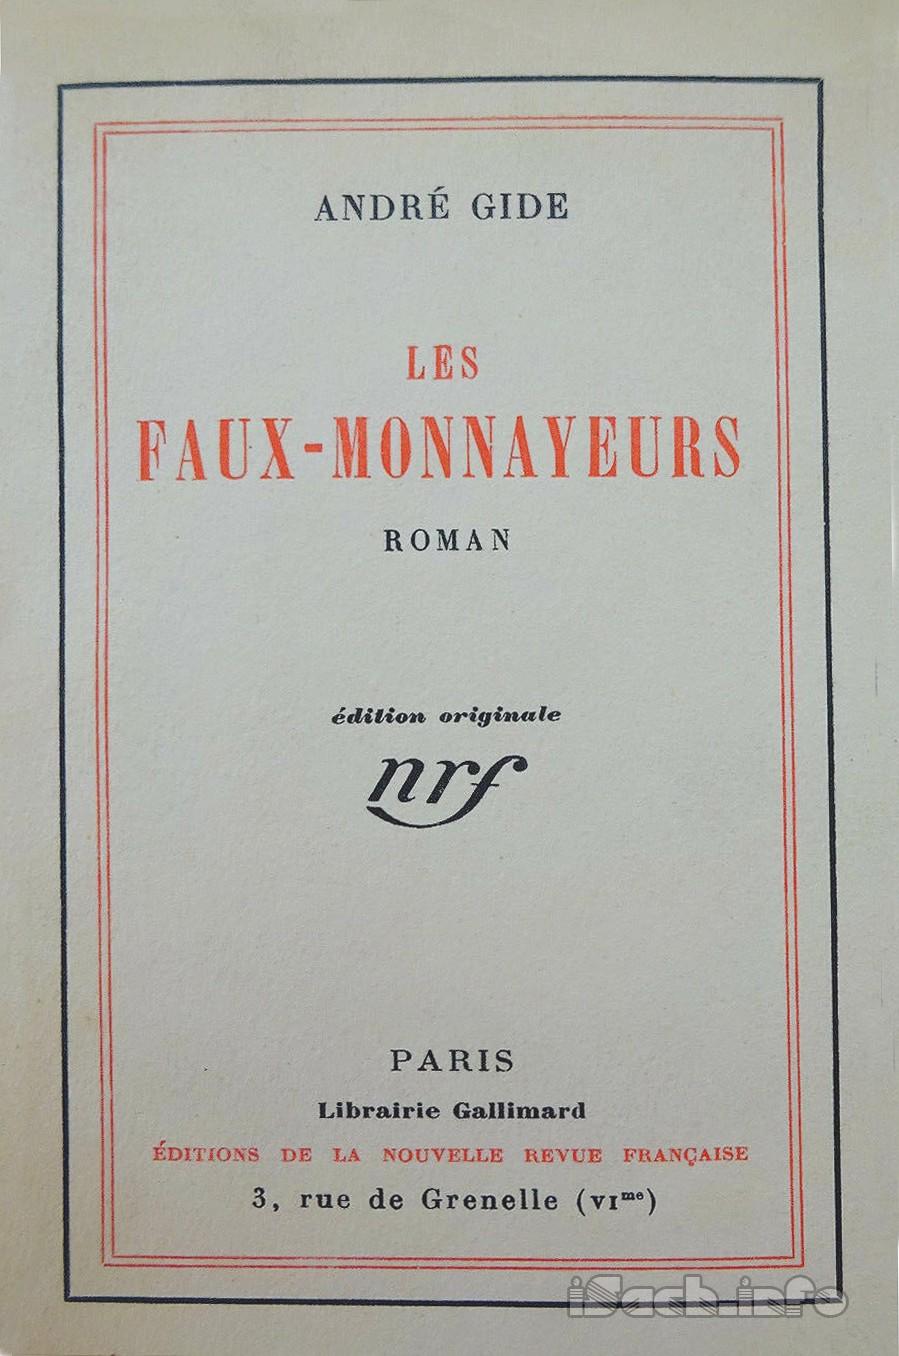 Les Faux-monnayeurs by André Gide